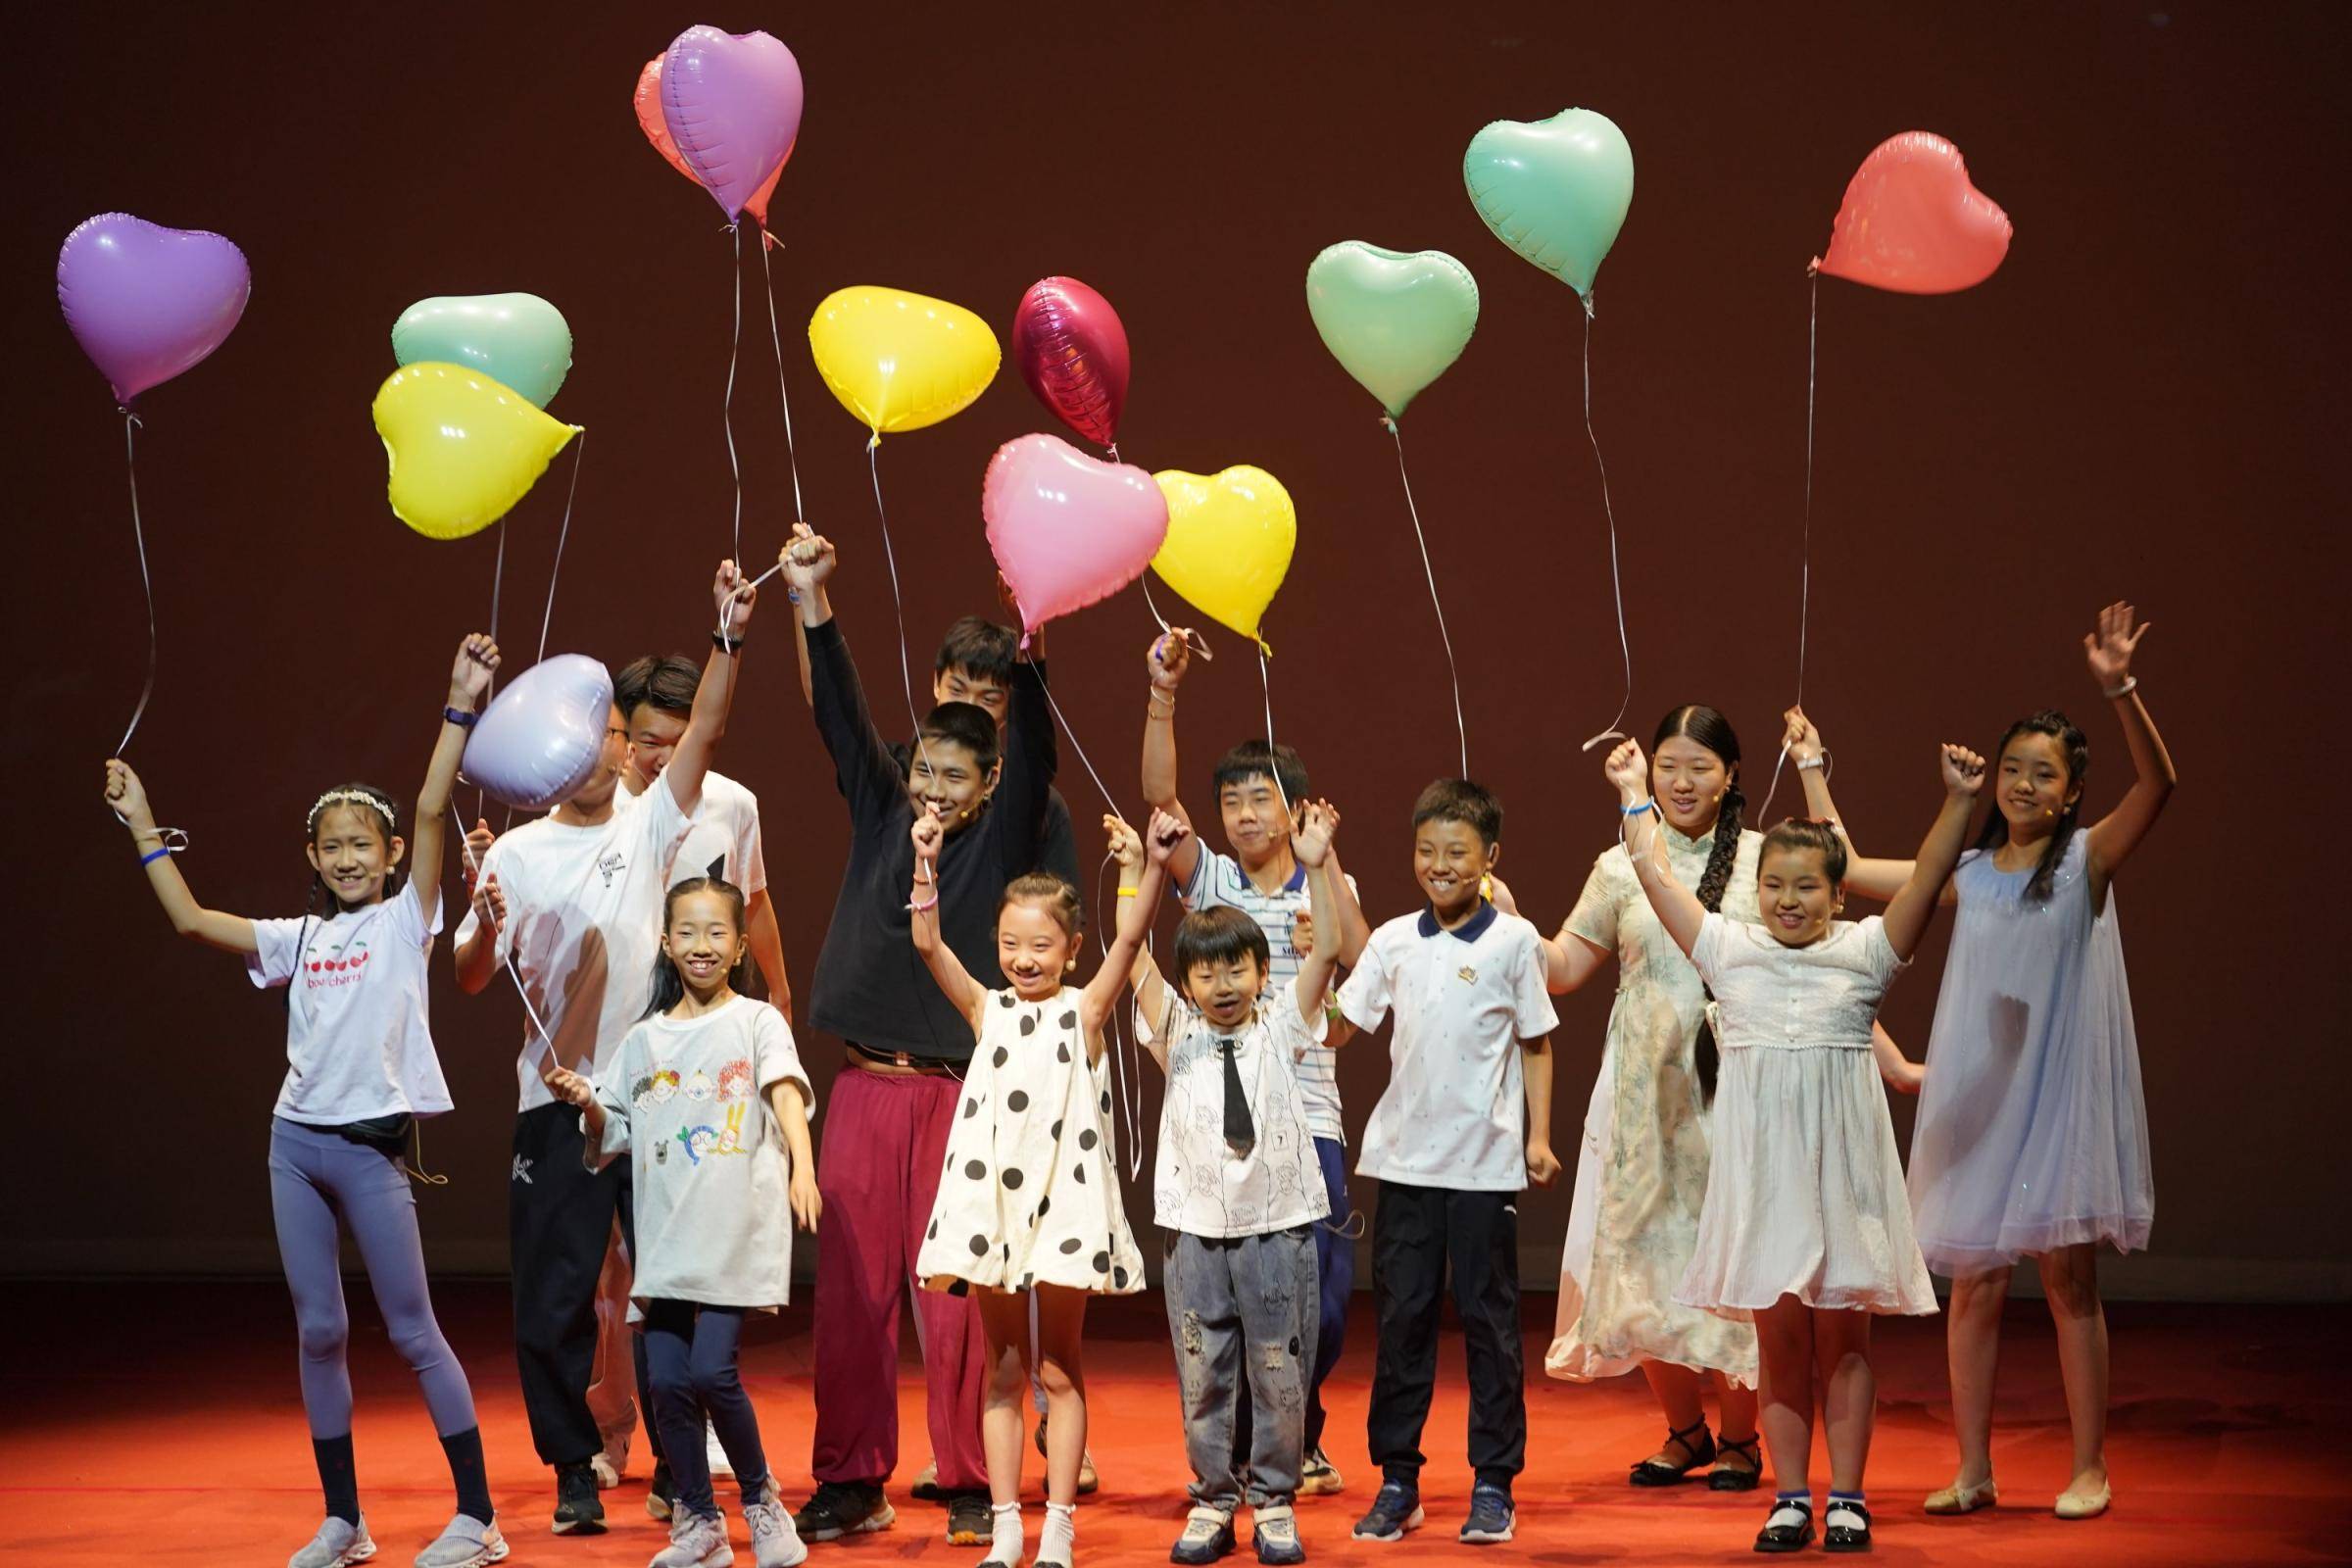 本届戏剧节以点亮童心 塑造未来为主题,将分设优秀儿童戏剧线下展演